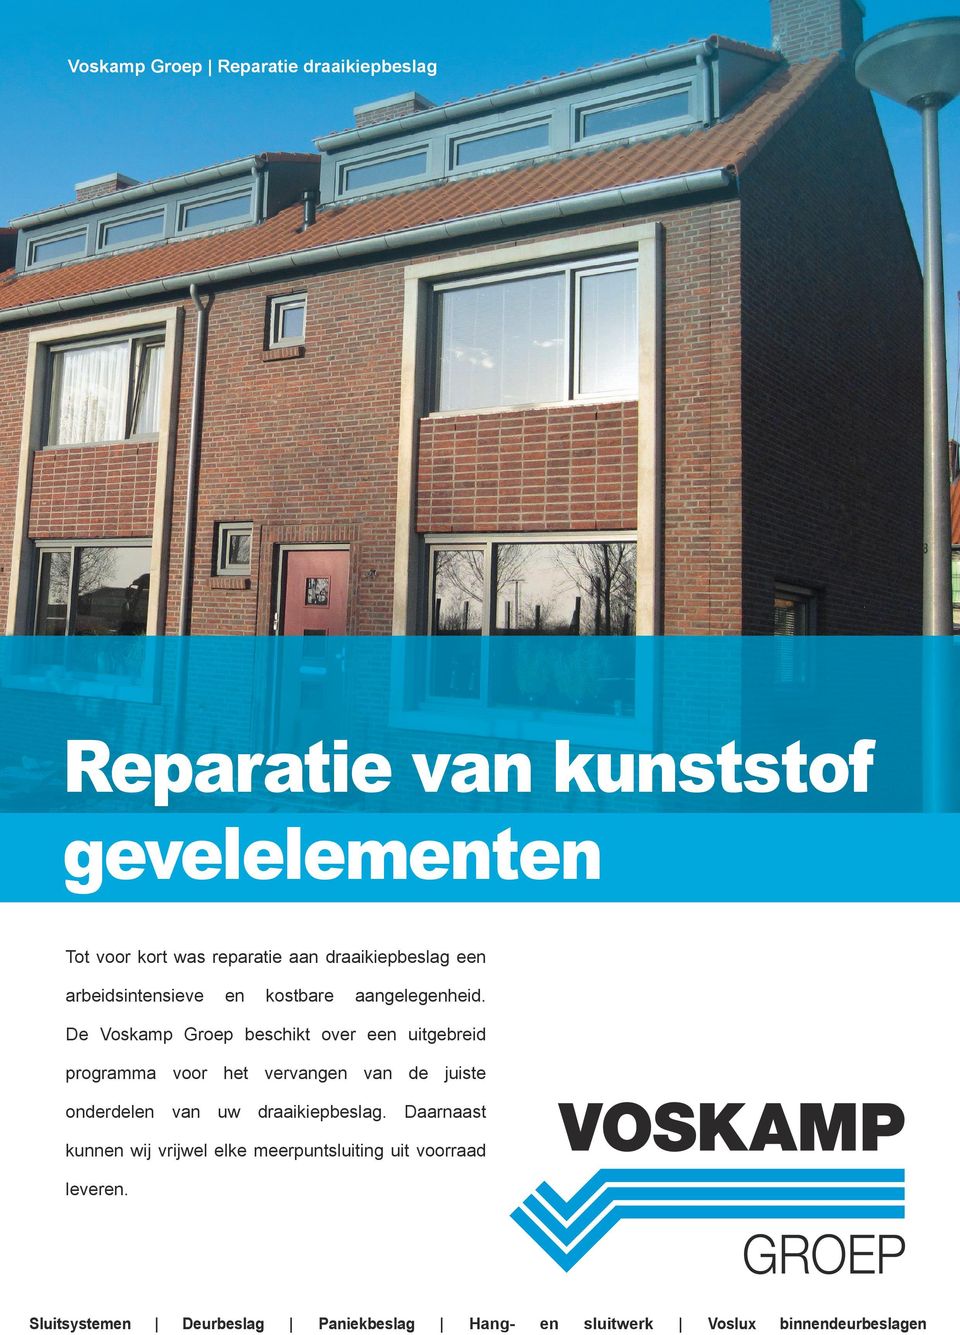 De Voskamp Groep beschikt over een uitgebreid programma voor het vervangen van de juiste onderdelen van uw